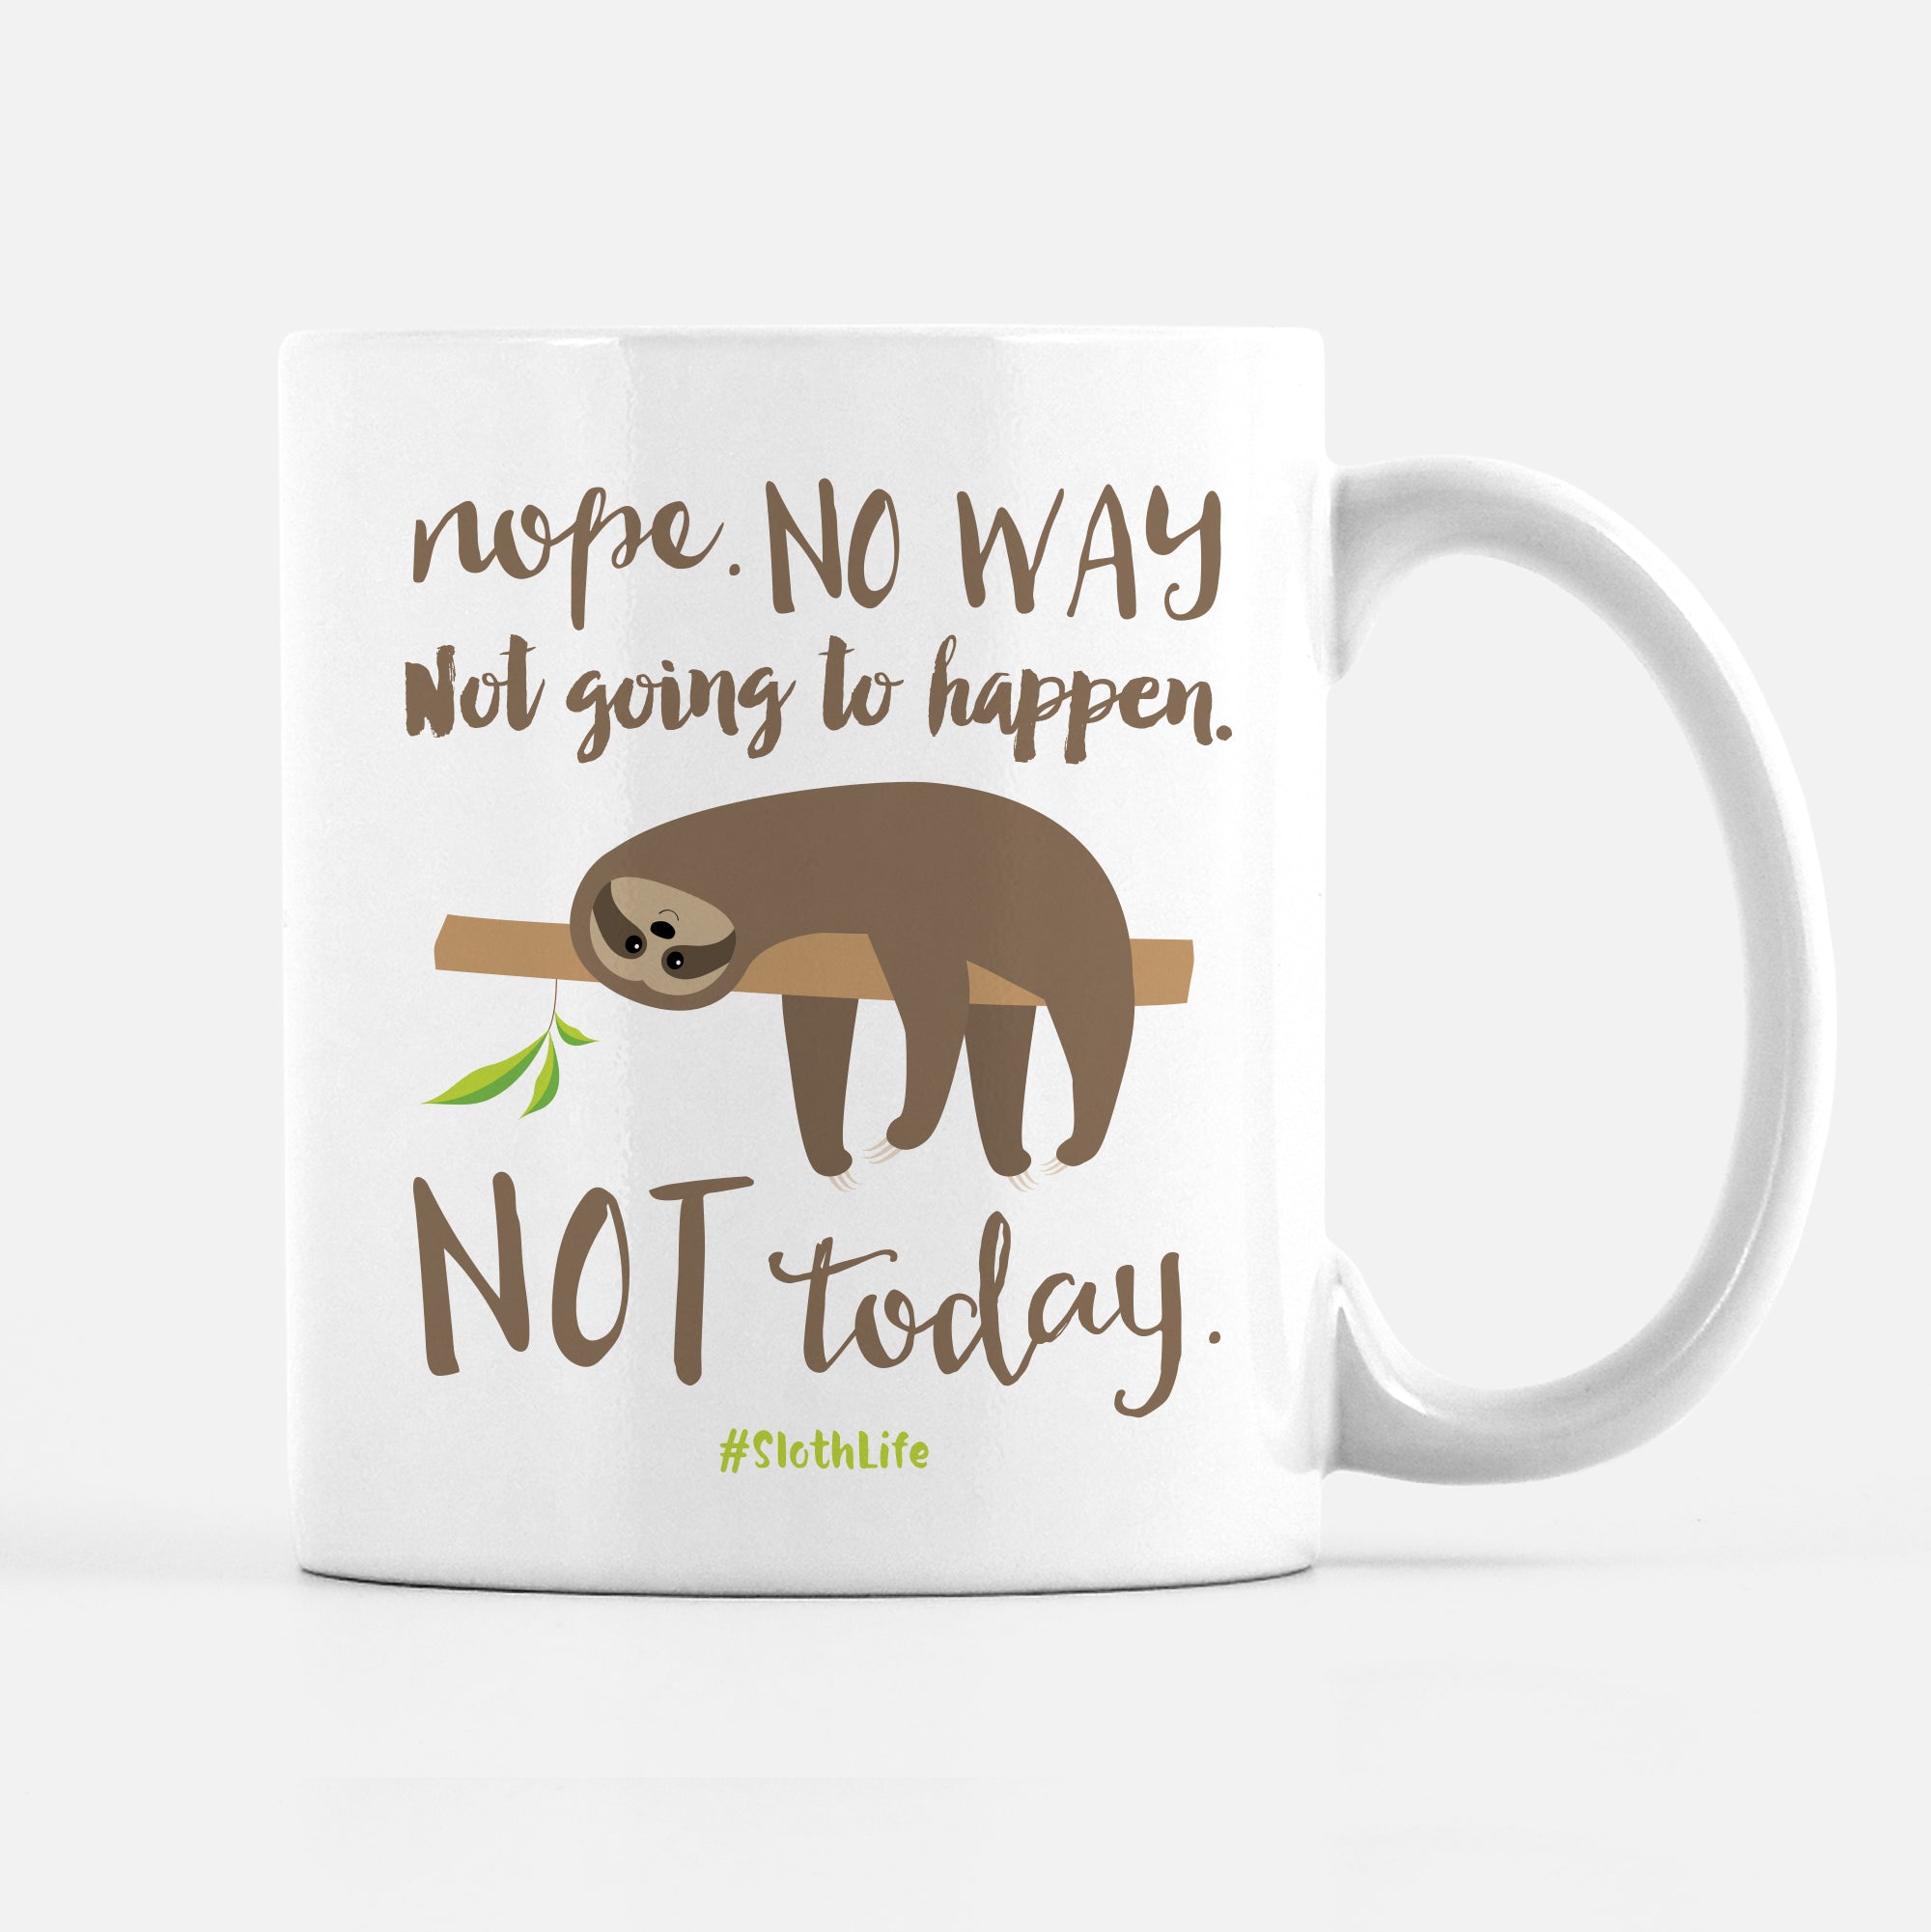 Nope Not Today Mug Monday Mood Coffee Mugs Swell Coffee Mug Actually N – We  Got Good